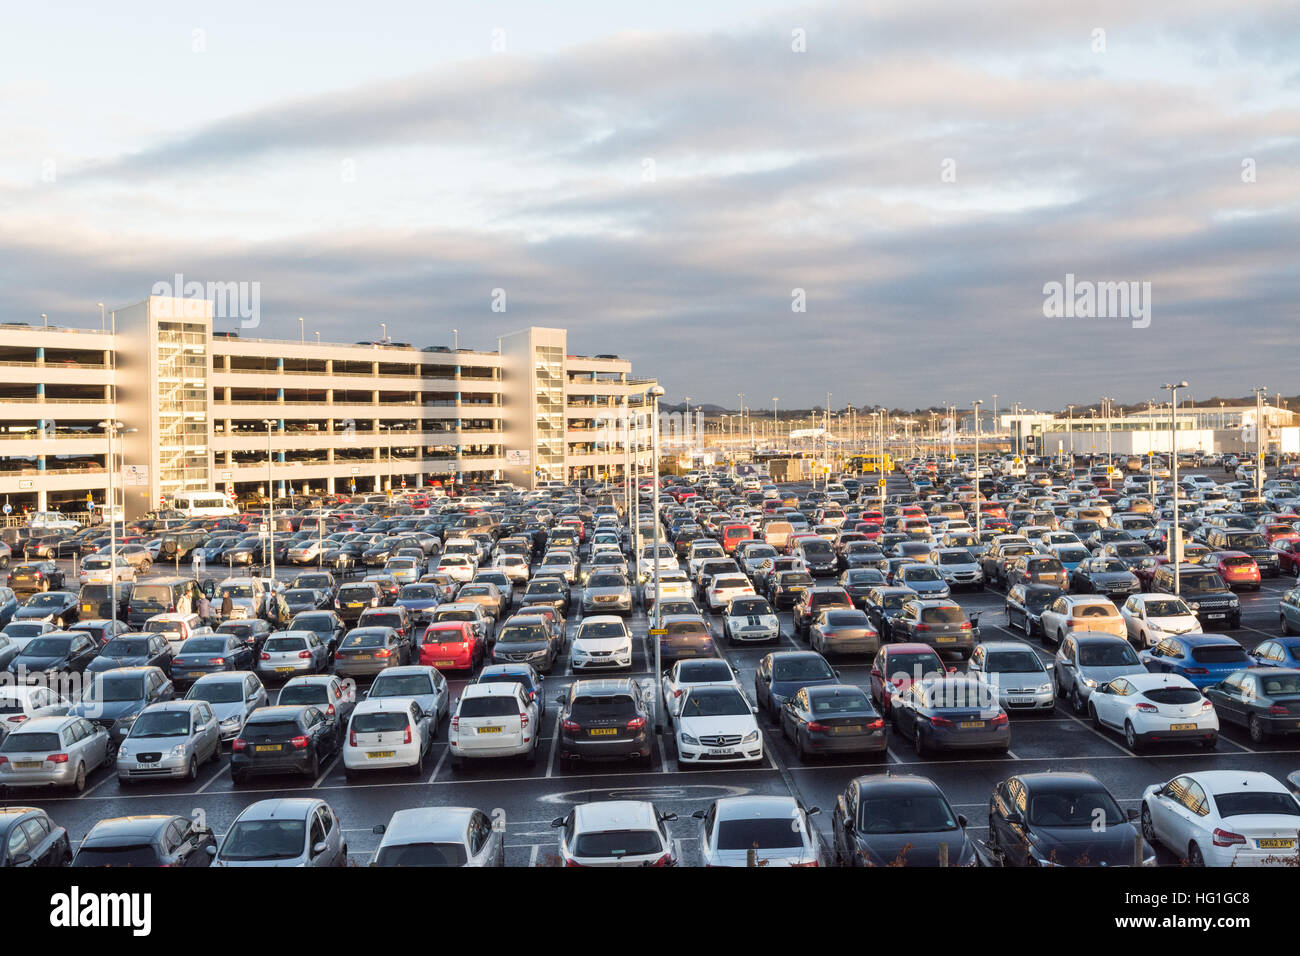 Parking al Aeropuerto de Edimburgo - coches estacionados en el aparcamiento del aeropuerto - Edimburgo, Escocia, Reino Unido Foto de stock